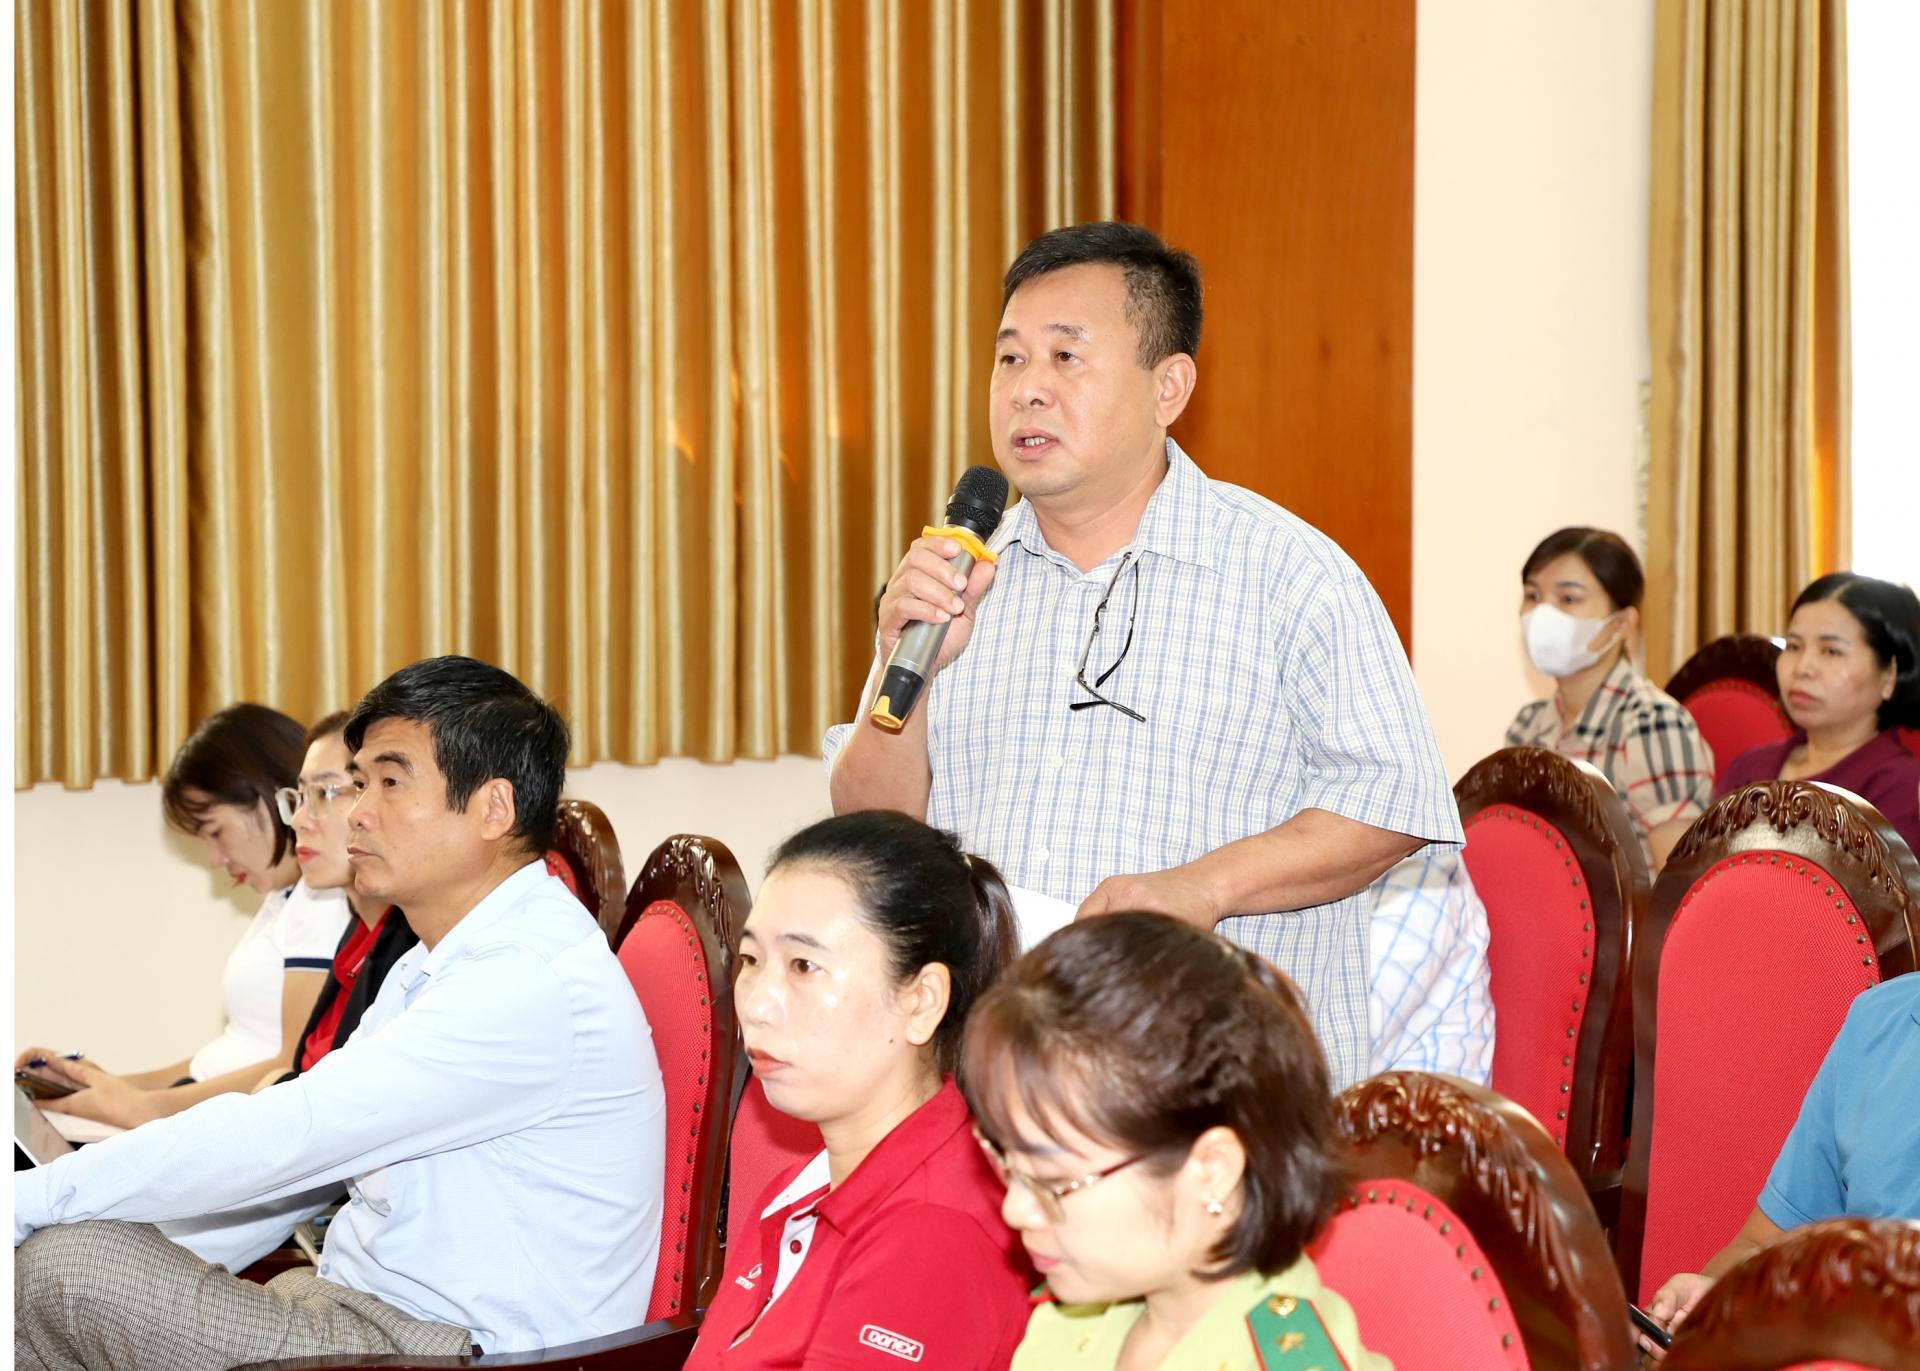 Trưởng phòng Dân tộc huyện Quang Bình đề xuất kiến nghị với Đoàn ĐBQH tăng định mức hỗ trợ cho sắp xếp bố trí ổn định dân cư xen ghép cao hơn từ 150-200 triệu/hộ.